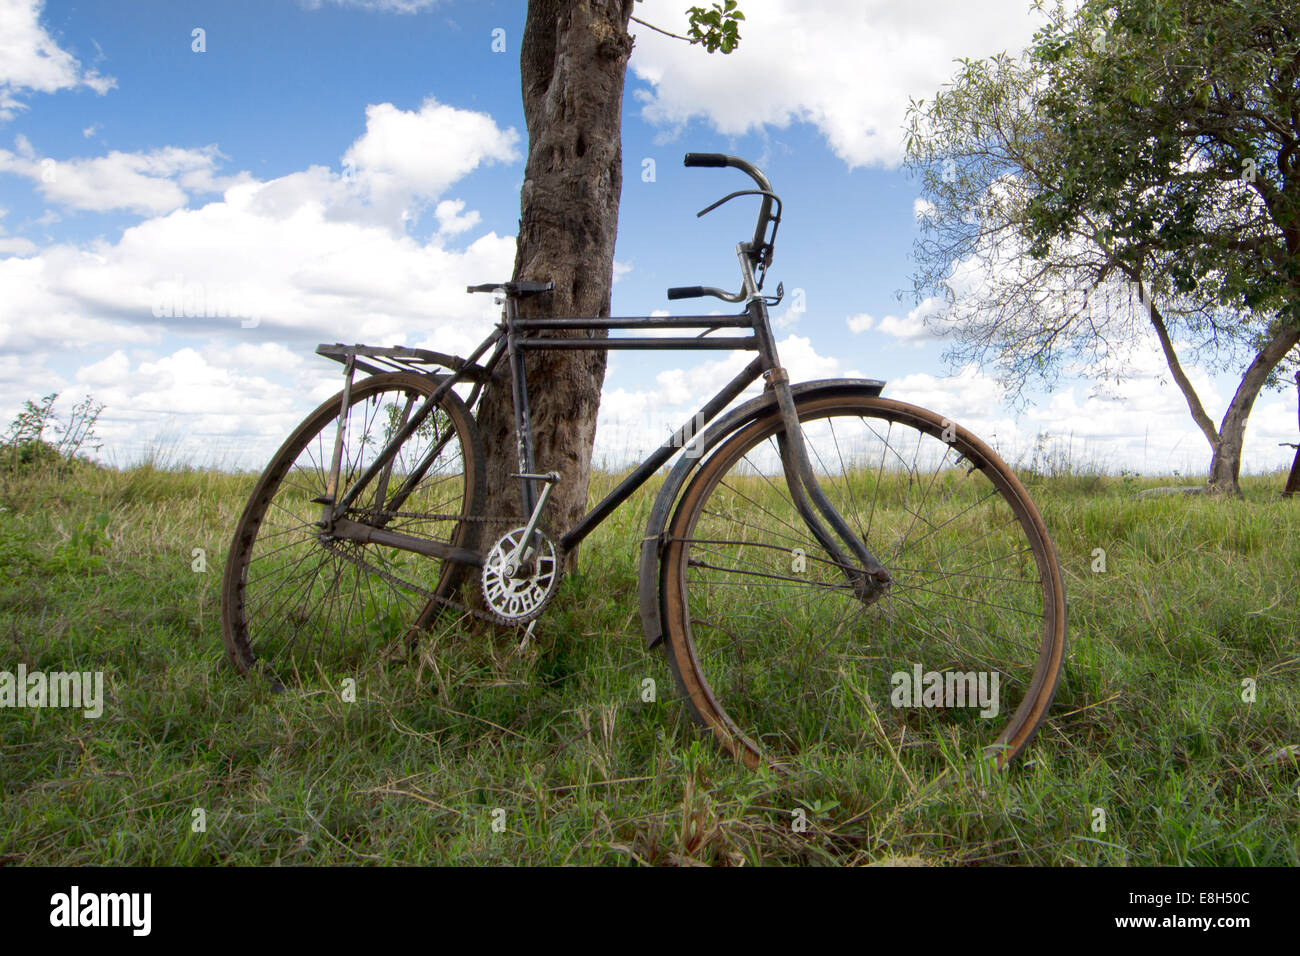 Una vecchia bicicletta usata per il trasporto nelle zone rurali Zambnia appoggia contro un albero a Chikuni isola in Bangweulu zone umide. Foto Stock